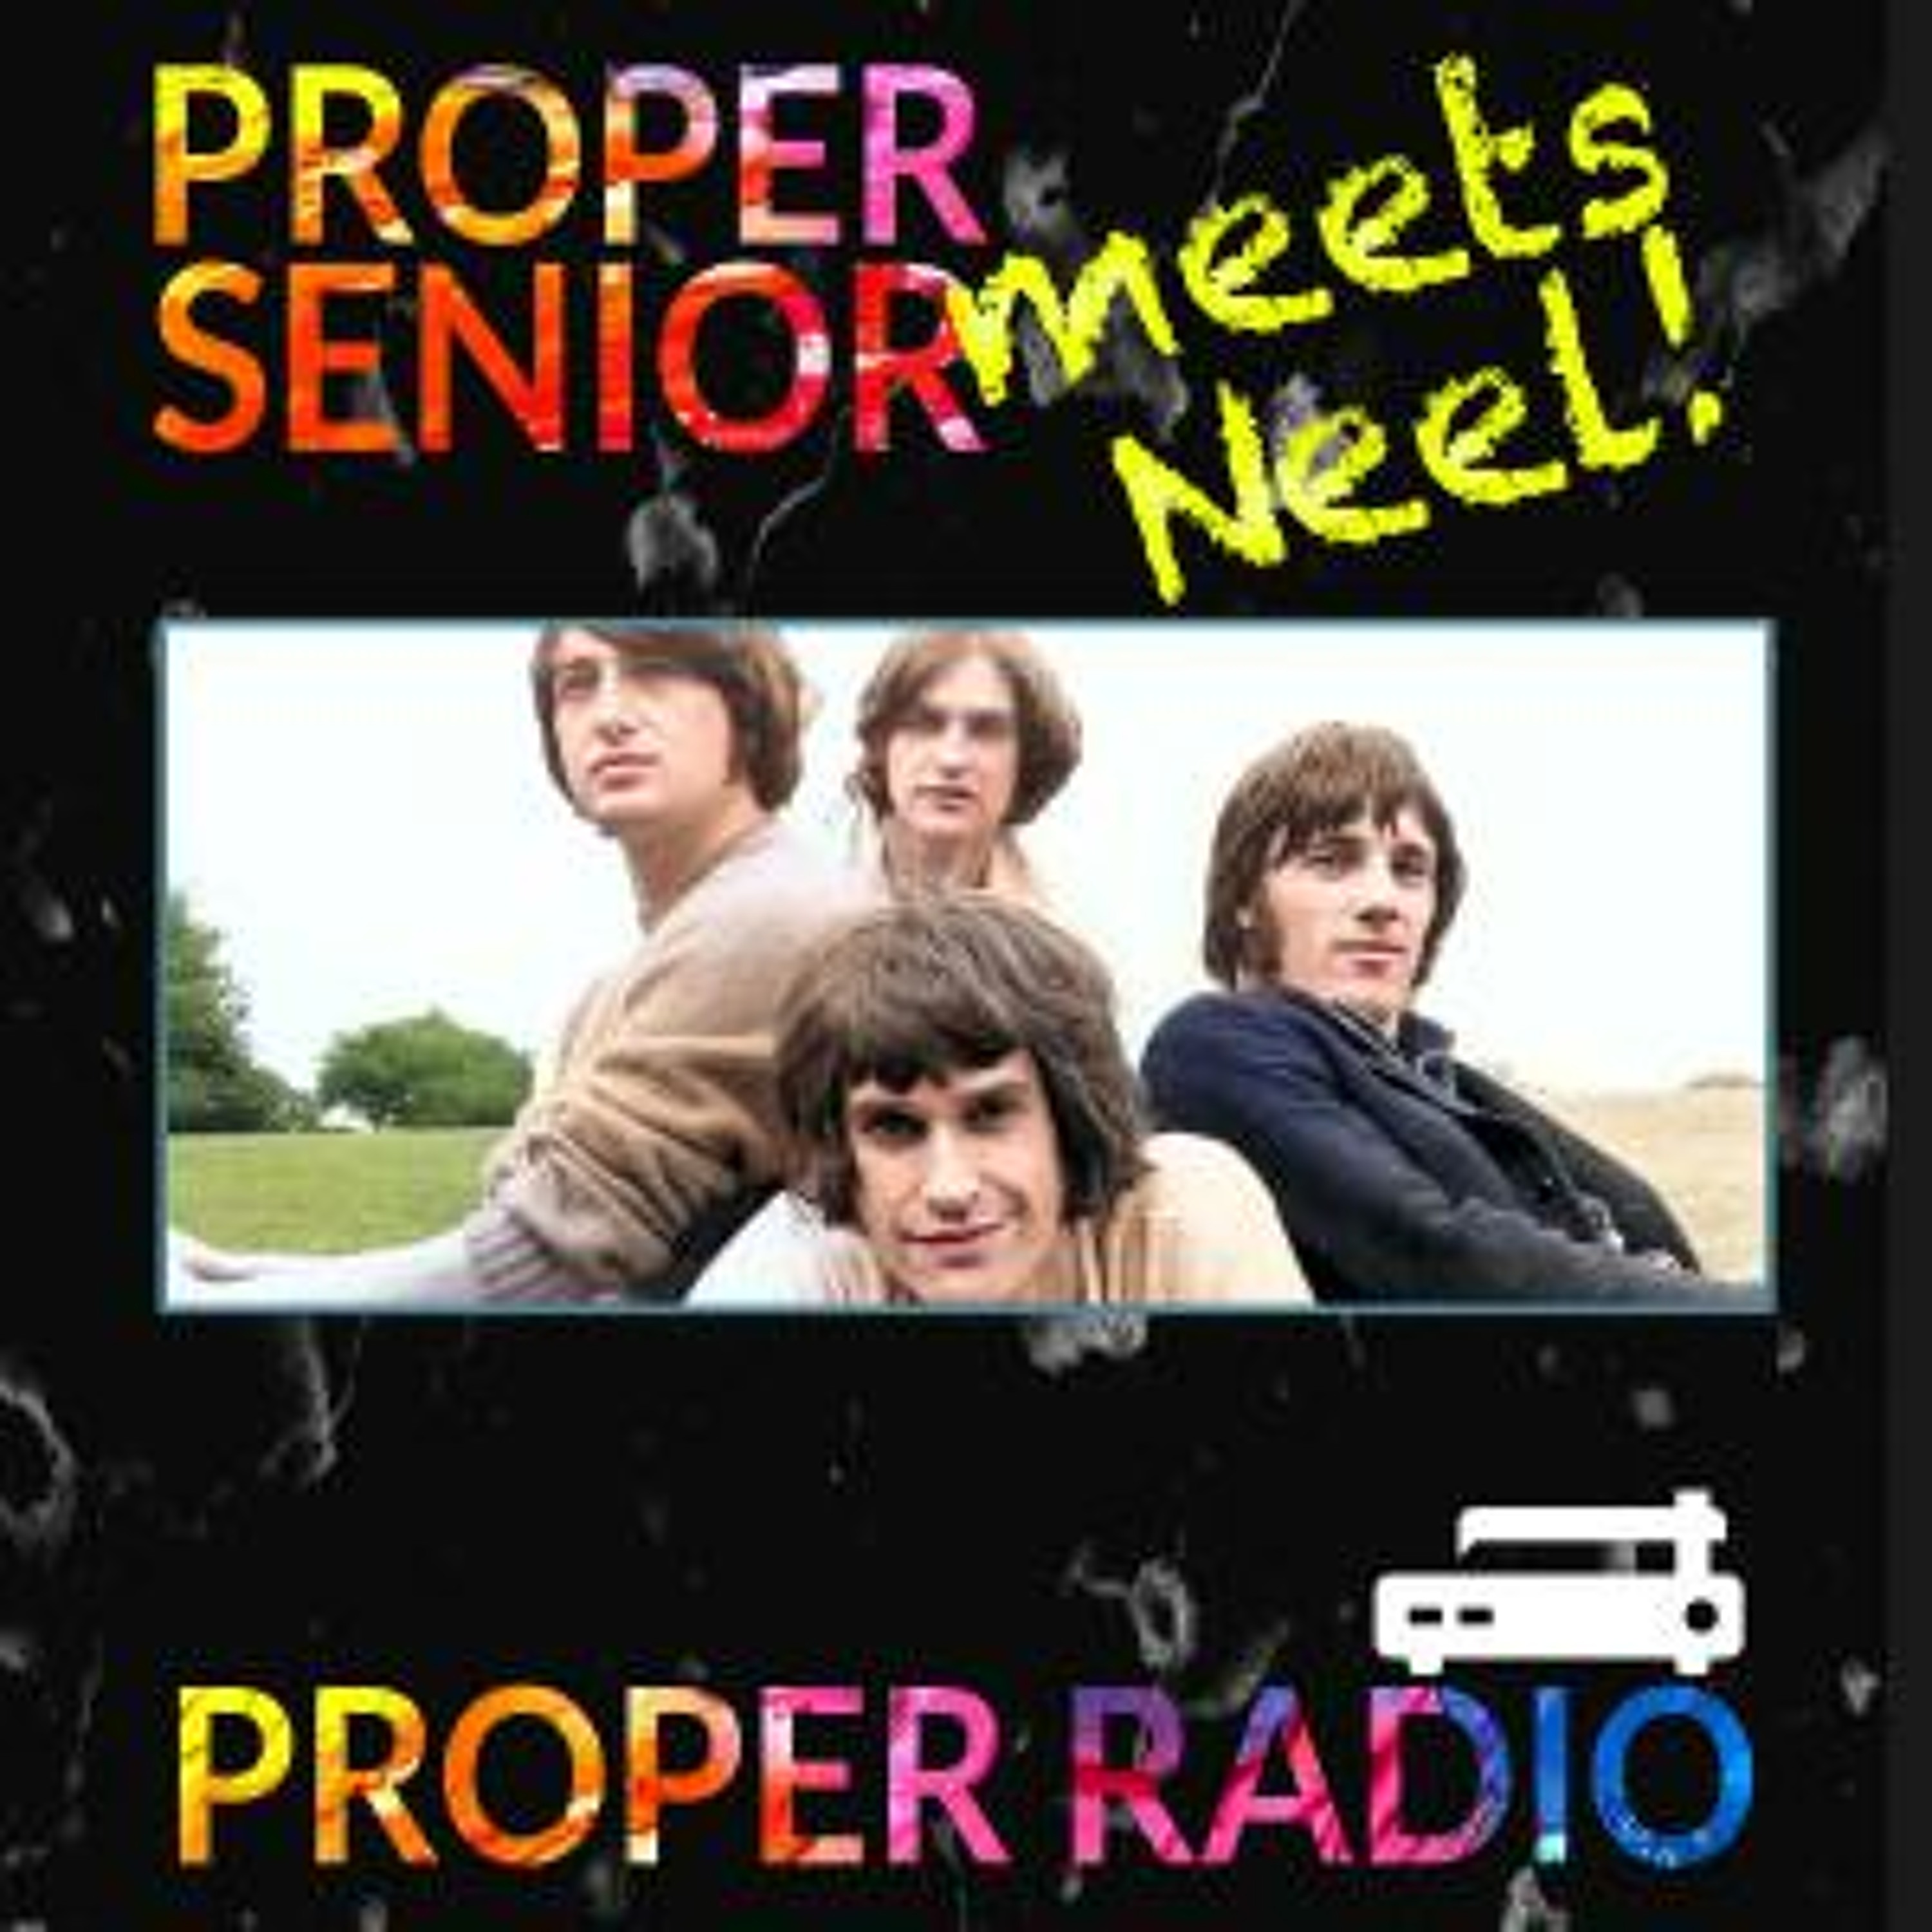 Proper Sr. meets Neel – Kinks vs Cake – S01E01